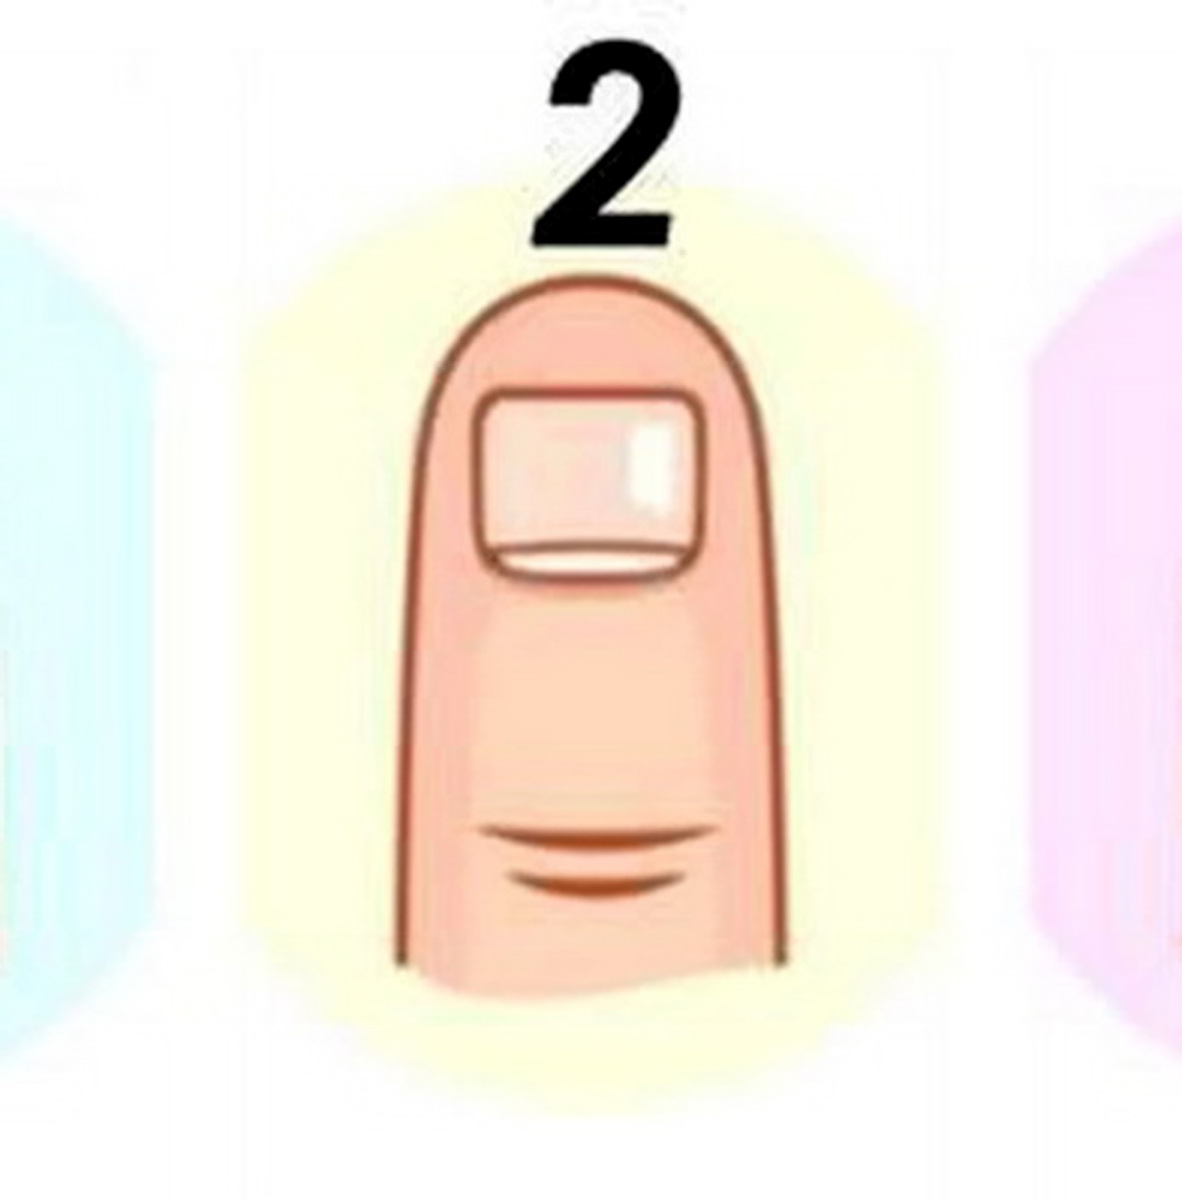 شکل ناخن شماره 2 در تست شخصیت شناسی براساس شکل ناخن